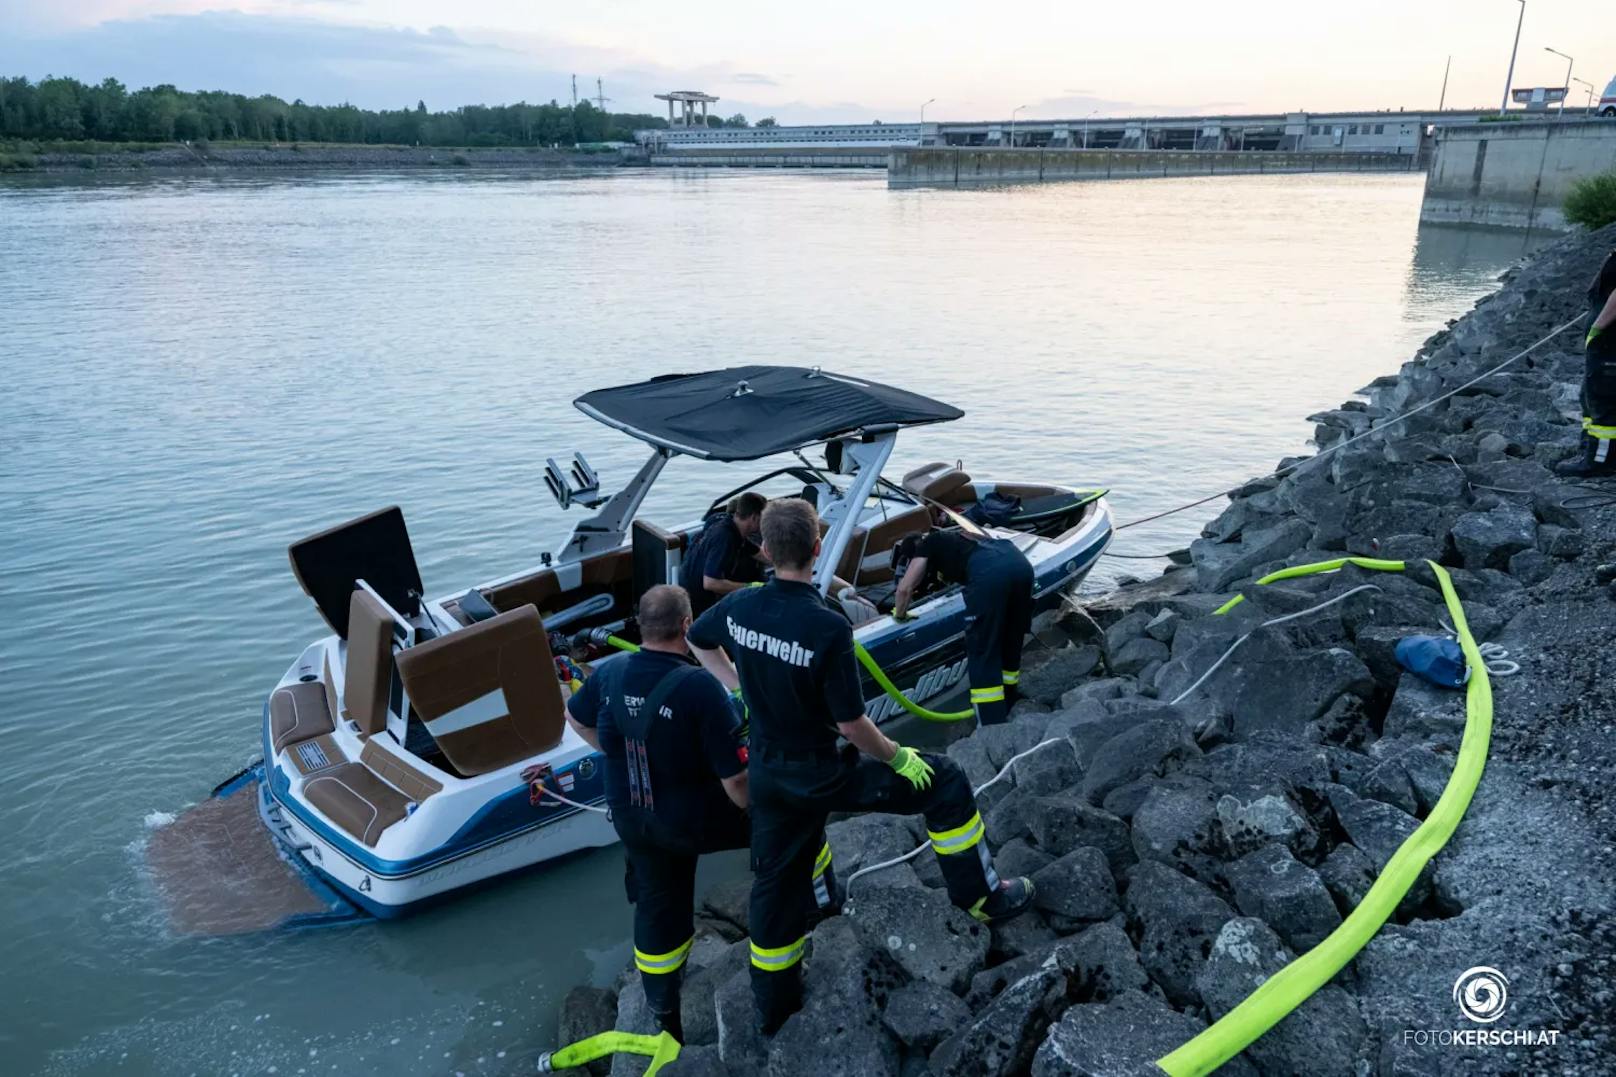 Zu einem schweren Bootsunfall kam es am Mittwochabend im Bereich des Donaukraftwerkes Abwinden-Asten. Ein mit zwei Personen besetztes Boot fuhr im Unterwasser auf einen Betonteil des Kraftwerkes auf. Die beiden Personen an Board wurden dabei verletzt und konnten das Boot daraufhin nicht mehr steuern.